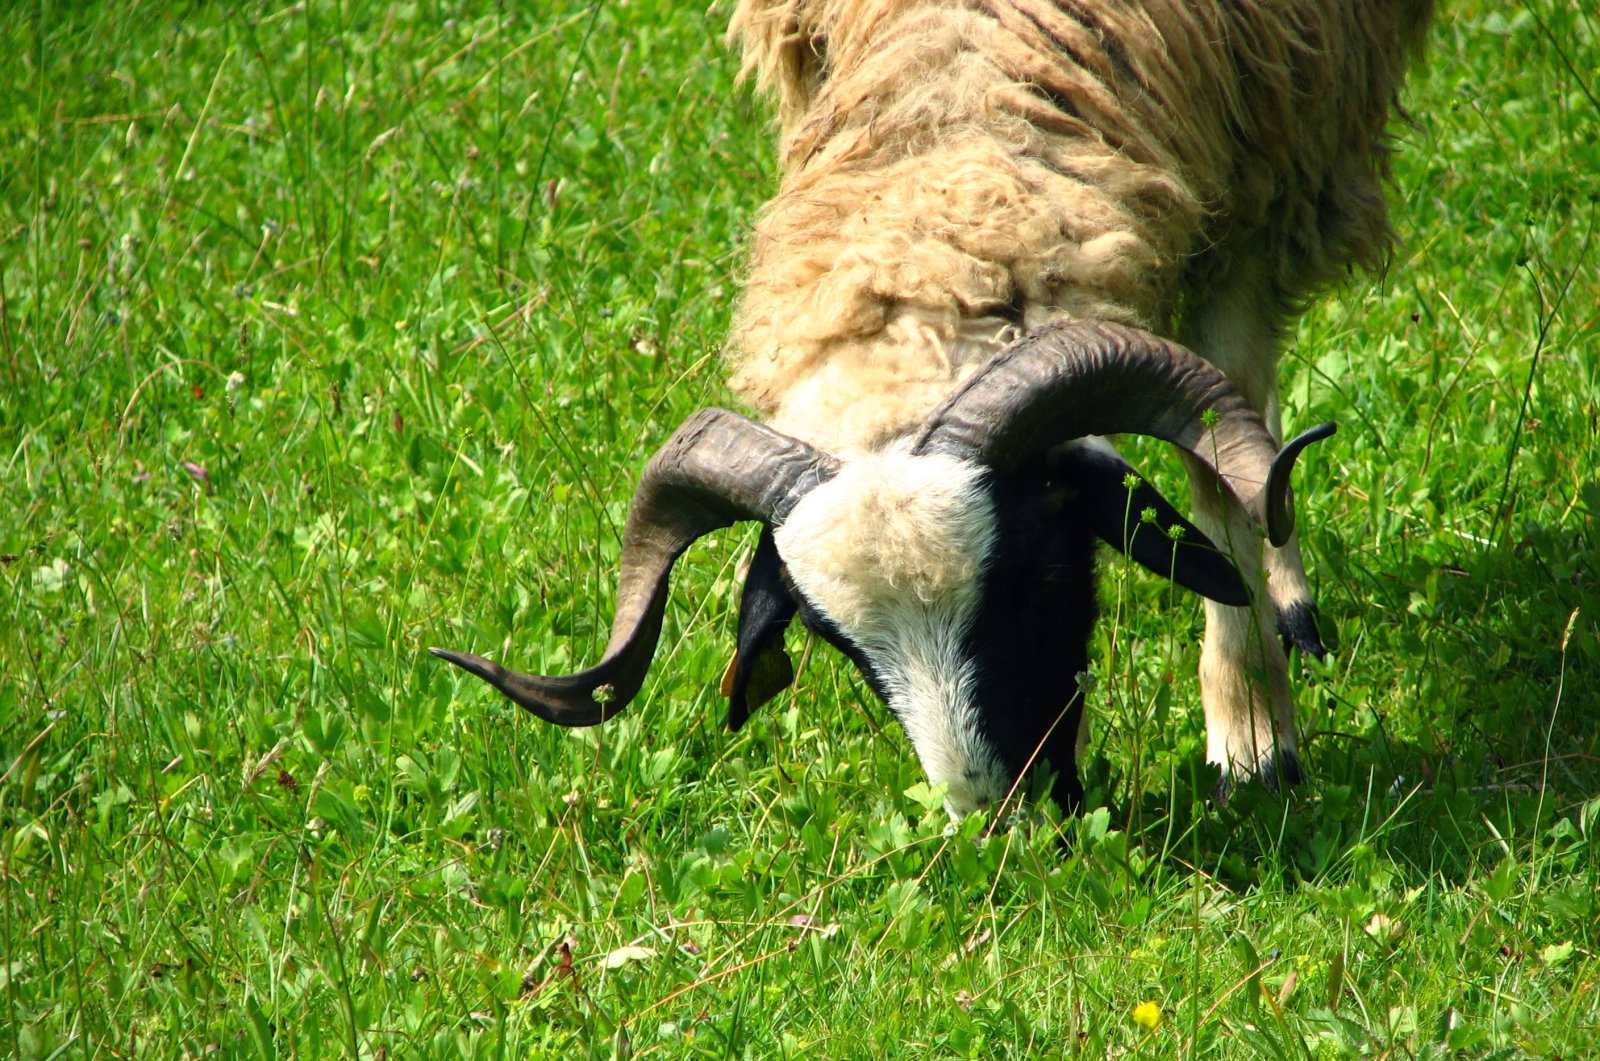 A goat eats grass on a field, in Bolu, Türkiye, June 16, 2012. (Photo by Ahmet Koçak)